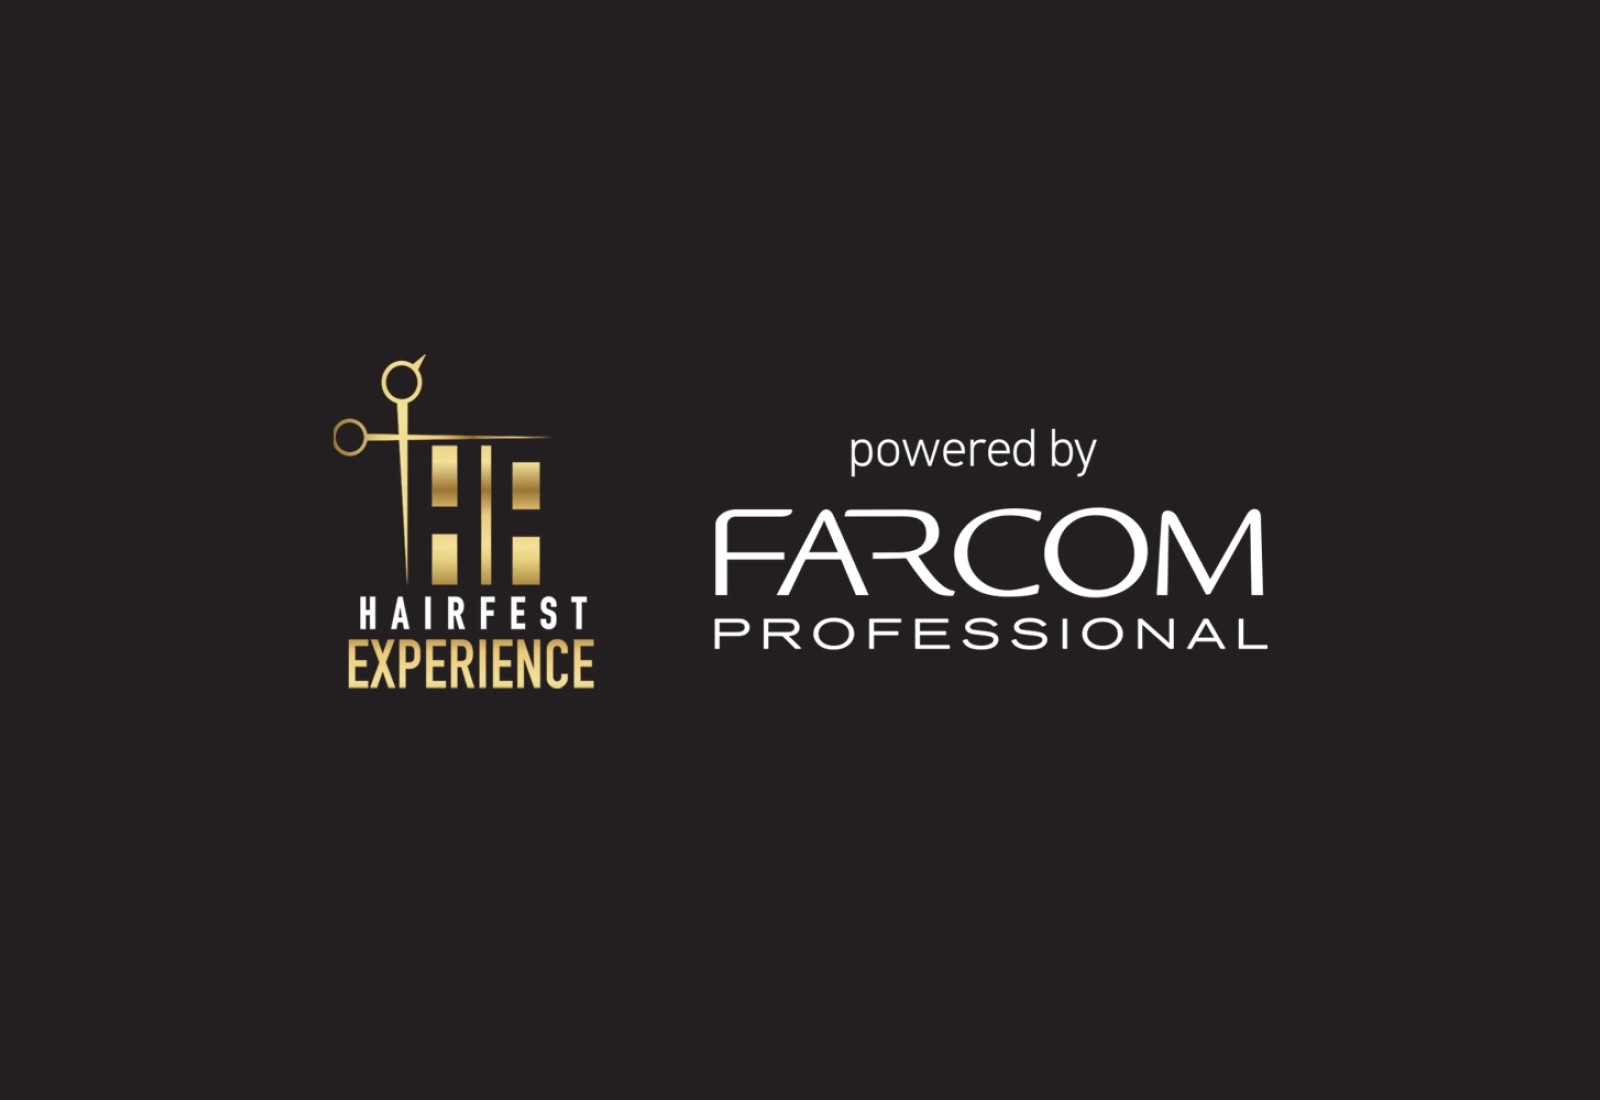 Η Farcom Professional μέγας χορηγός του Hairfest Experience